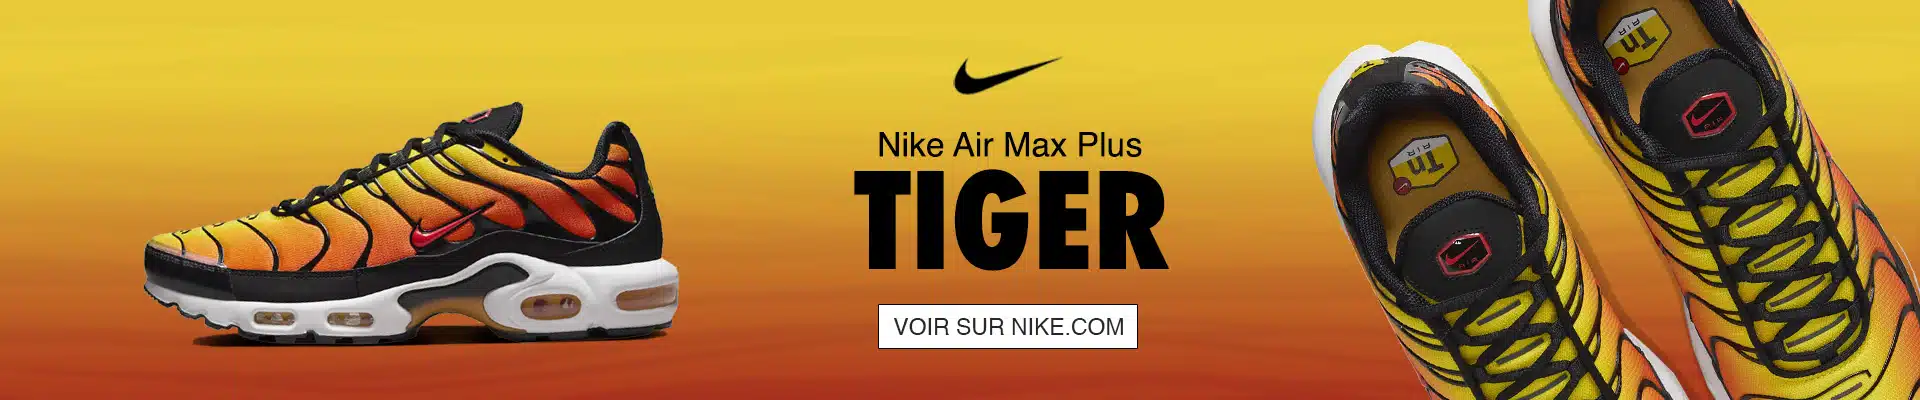 Nike Air Max Plus Tiger